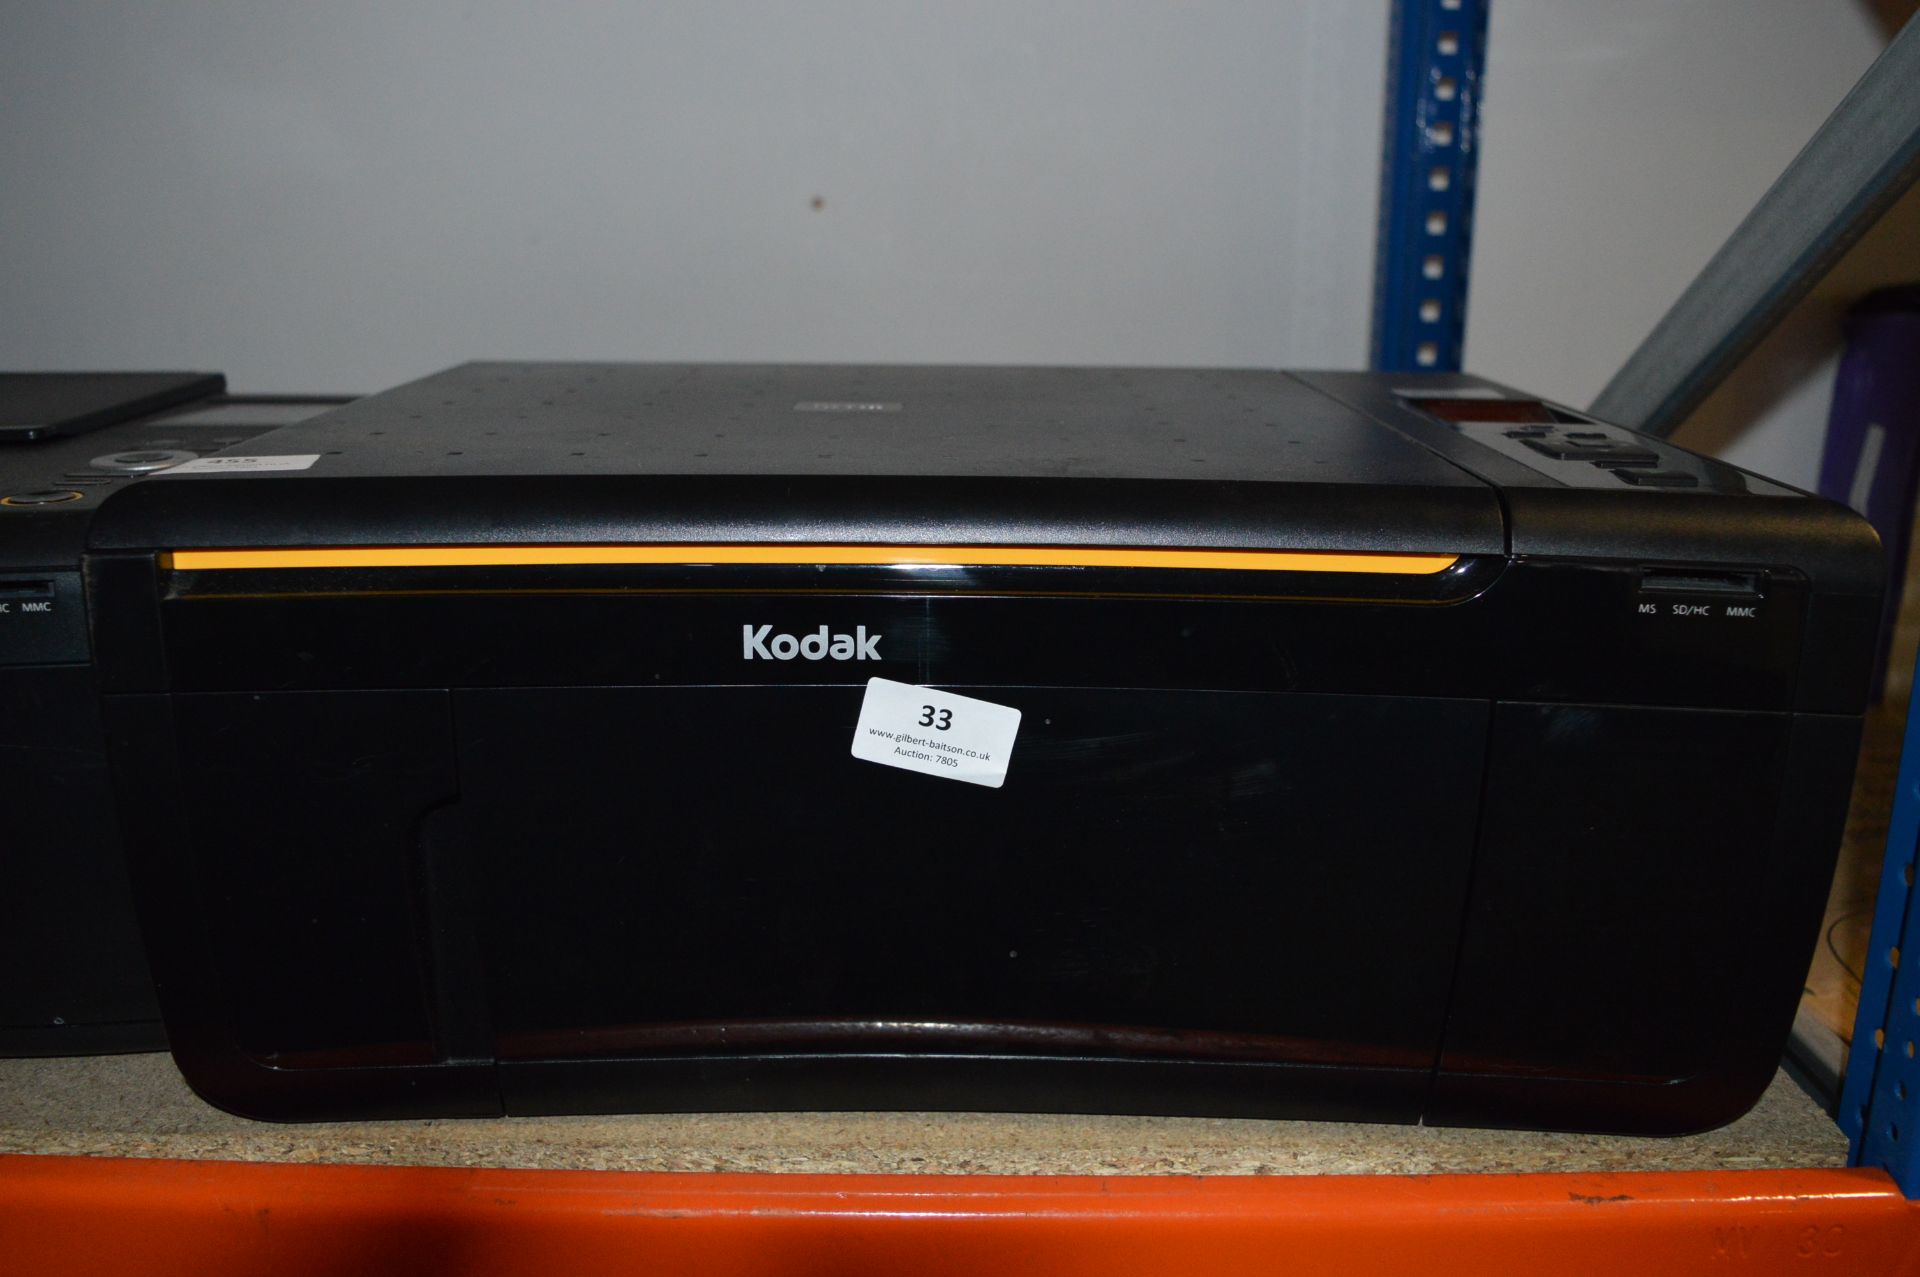 Kodak Esp 3250 AIO Printer